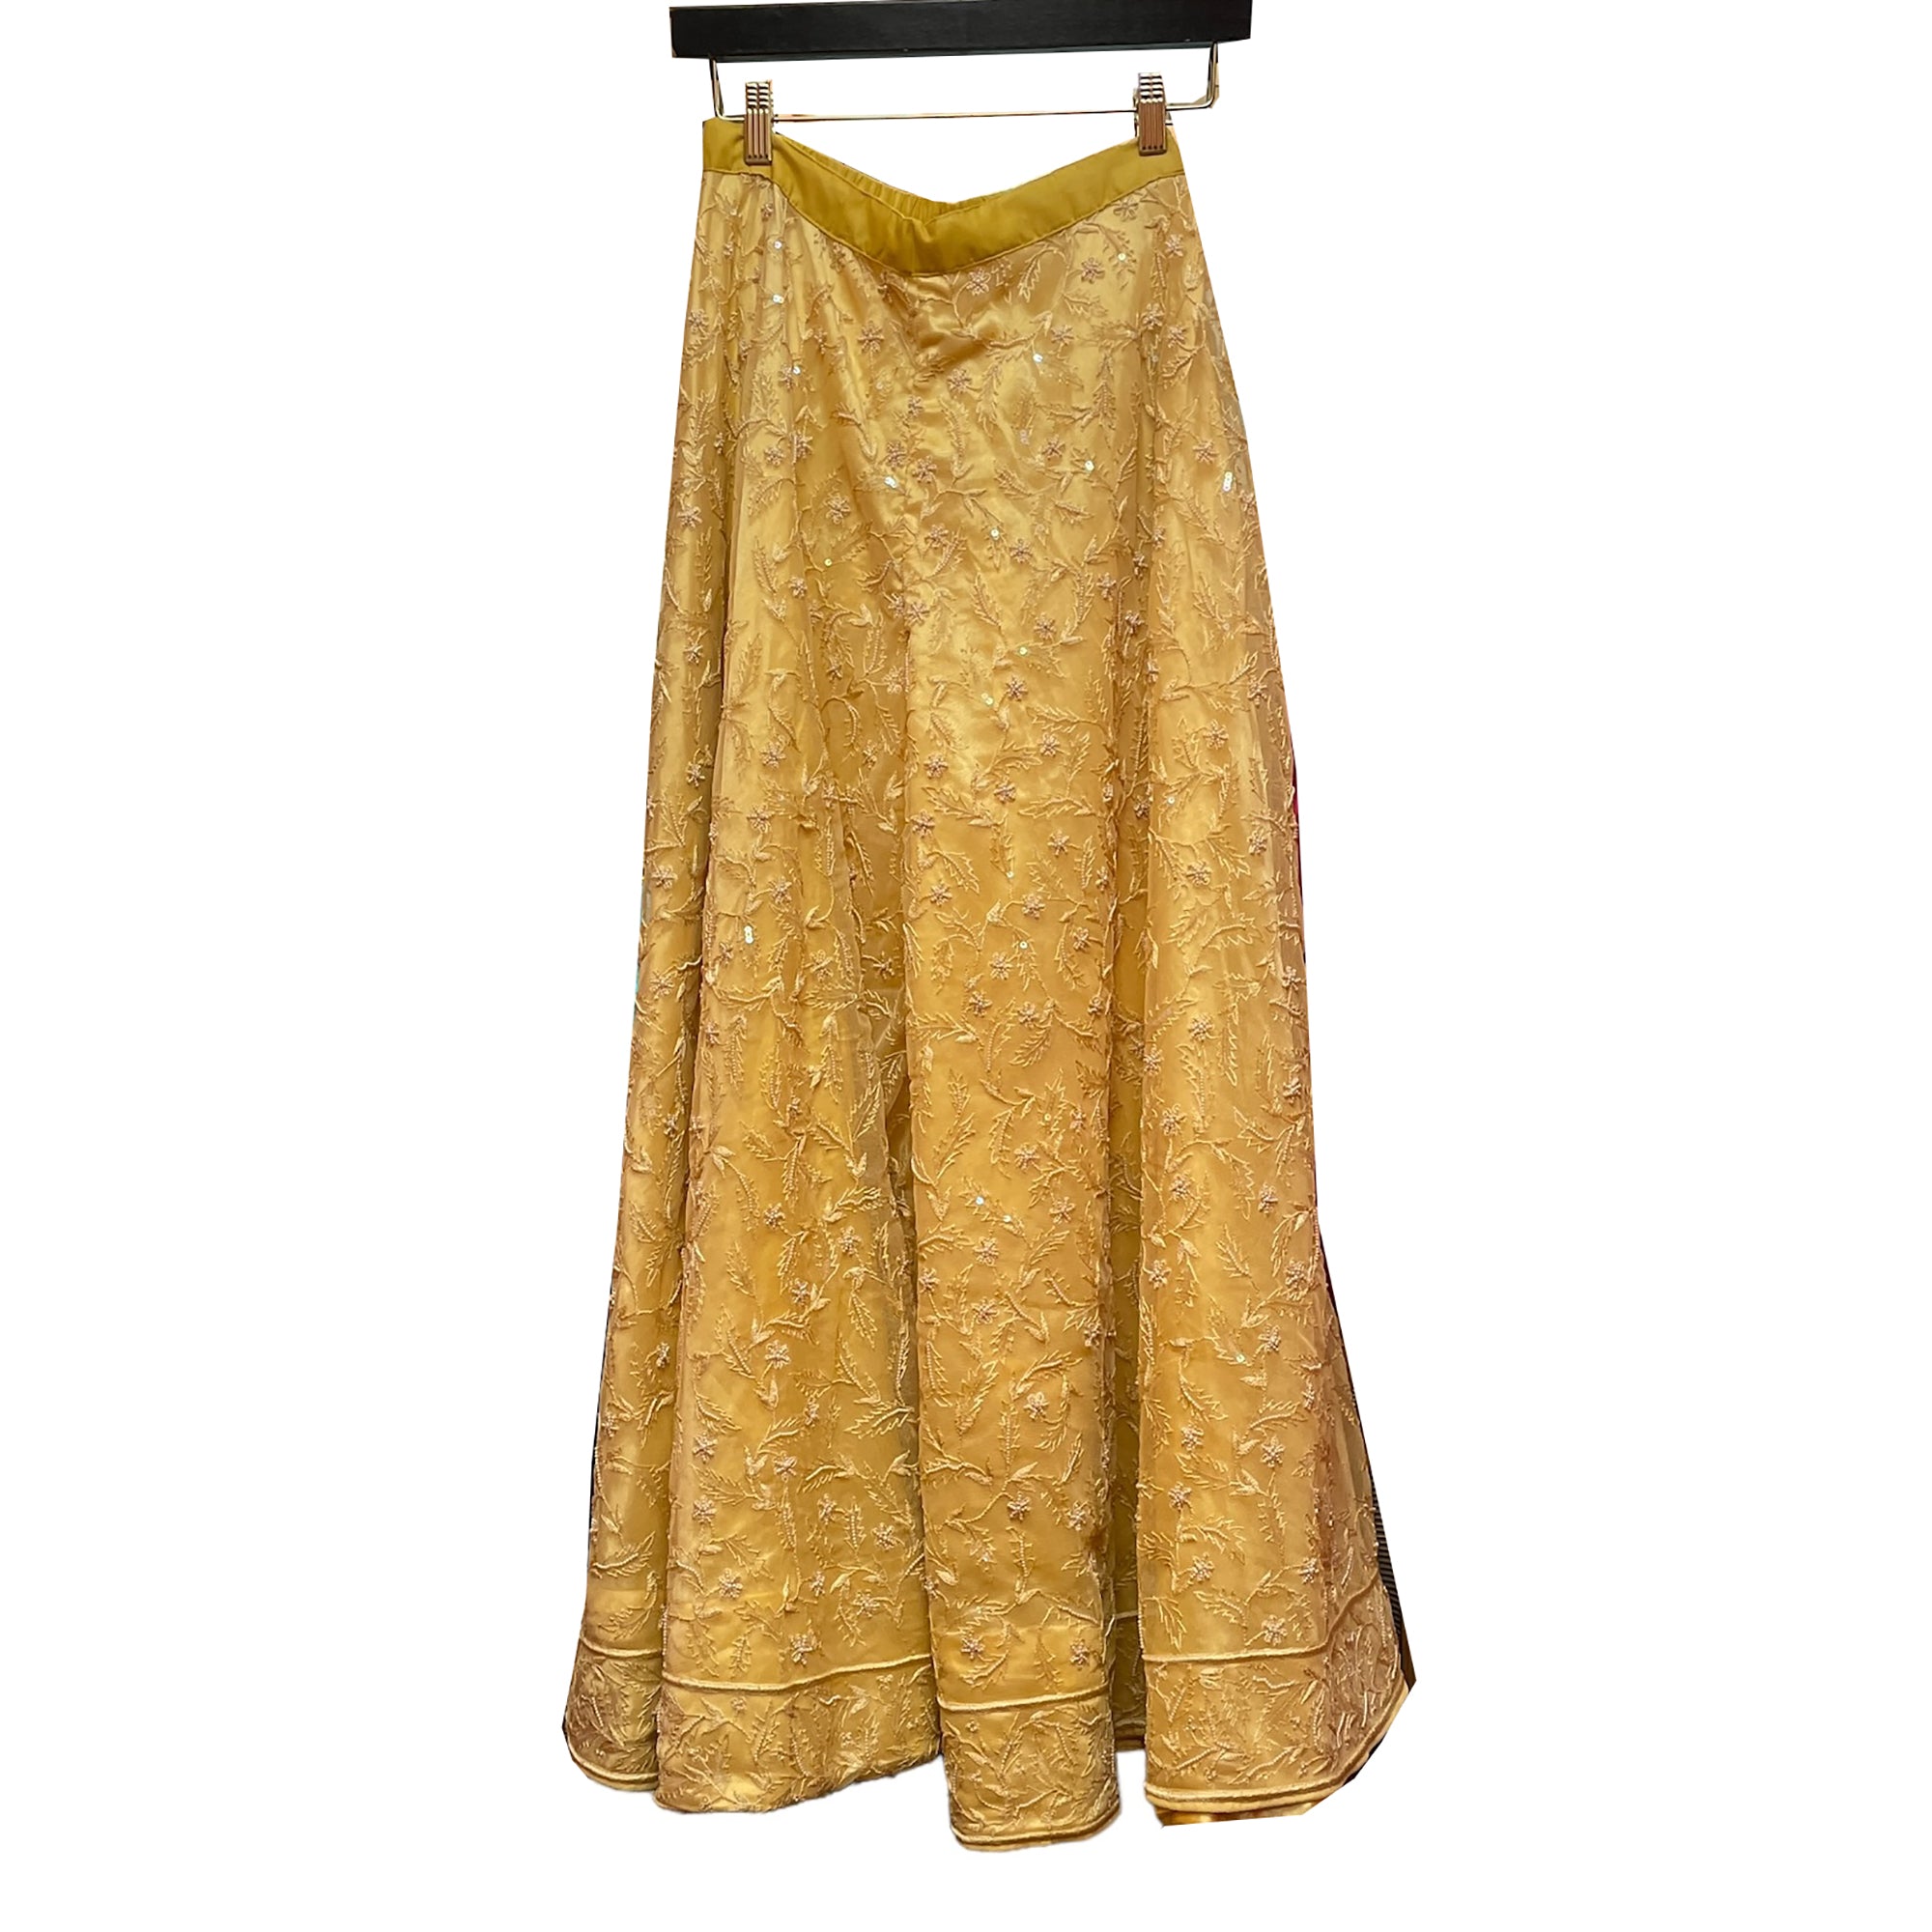 Handmade Gold Sharara Pants - Vintage India NYC